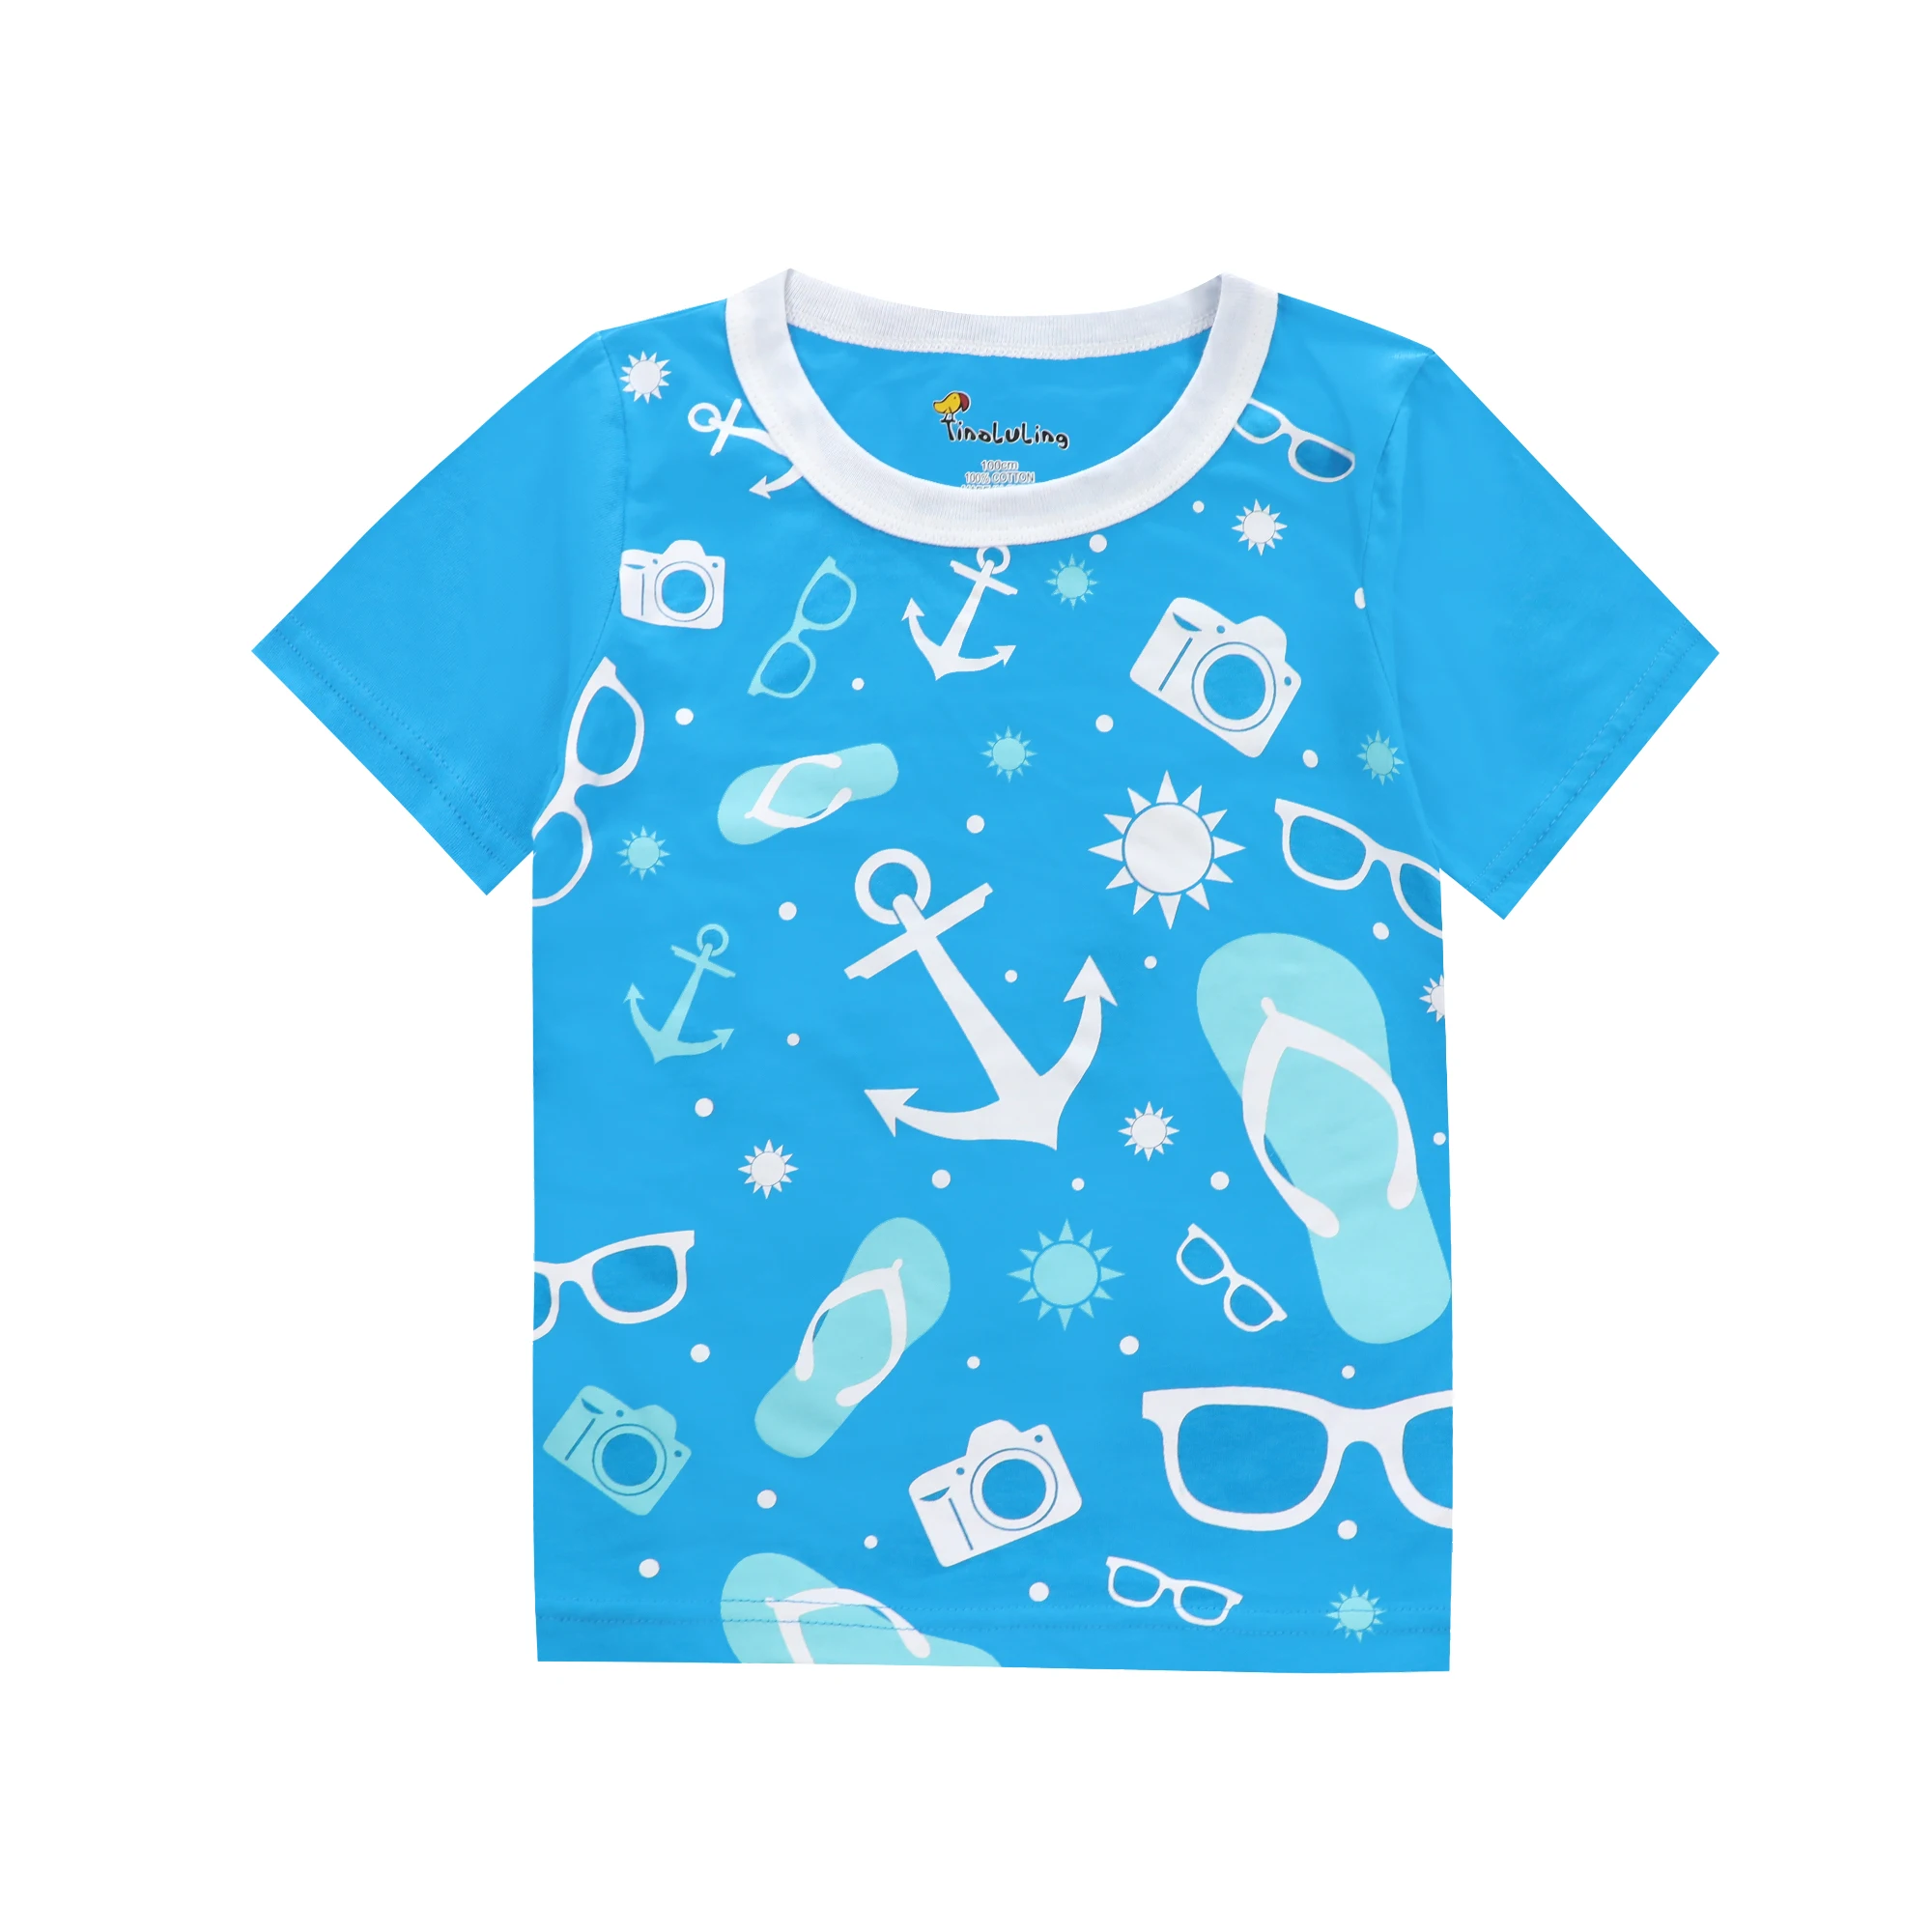 Детская футболка для отдыха детские вечерние футболки Round футболка с круглым вырезом Детская Хлопковая футболка Летняя детская футболка детская одежда